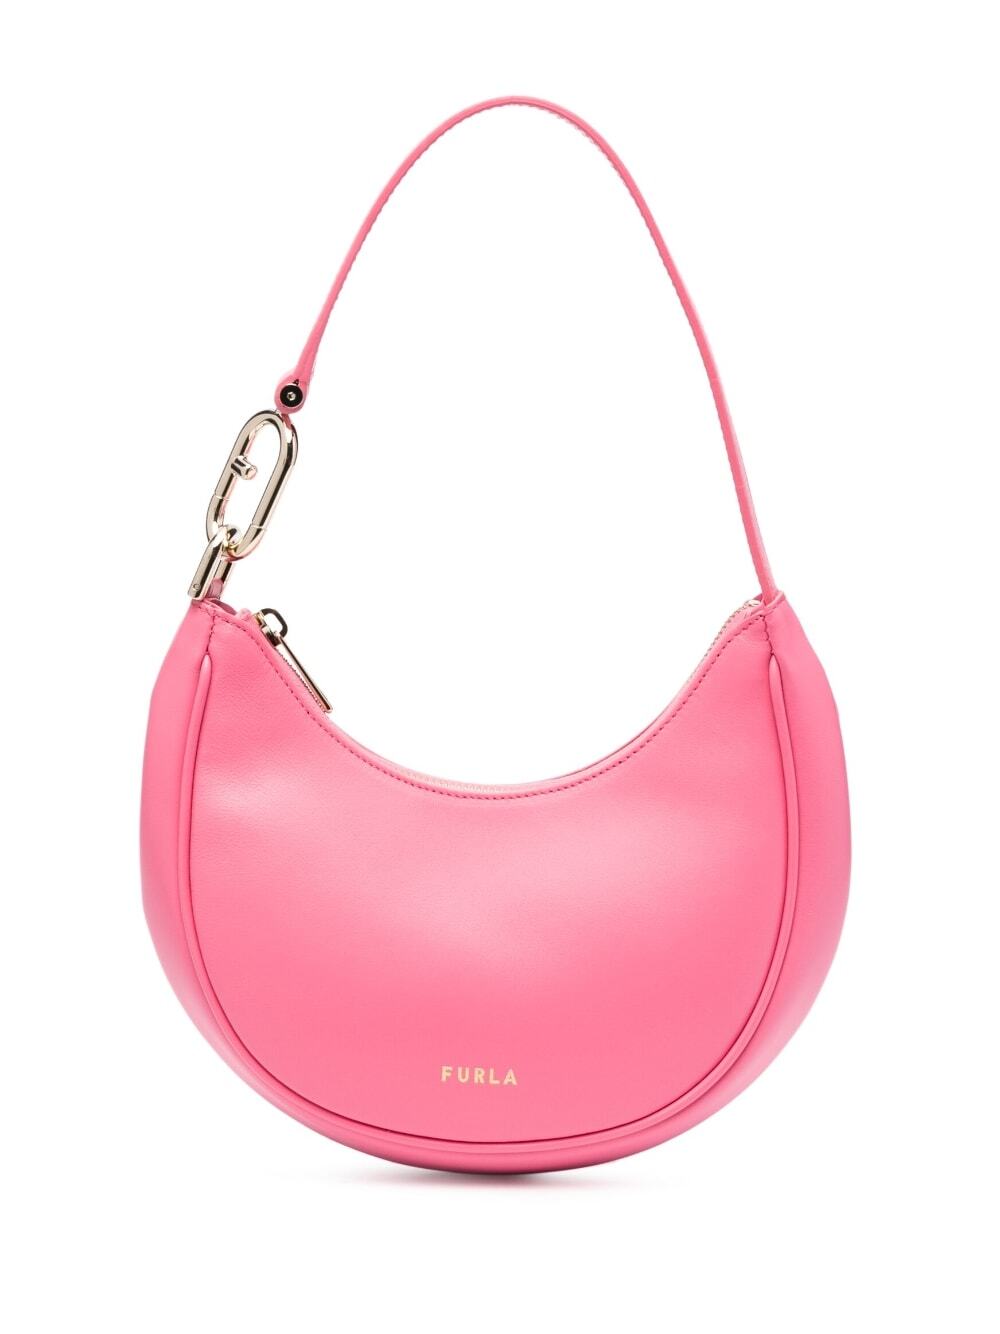 Furla Primavera leather shoulder bag - Pink